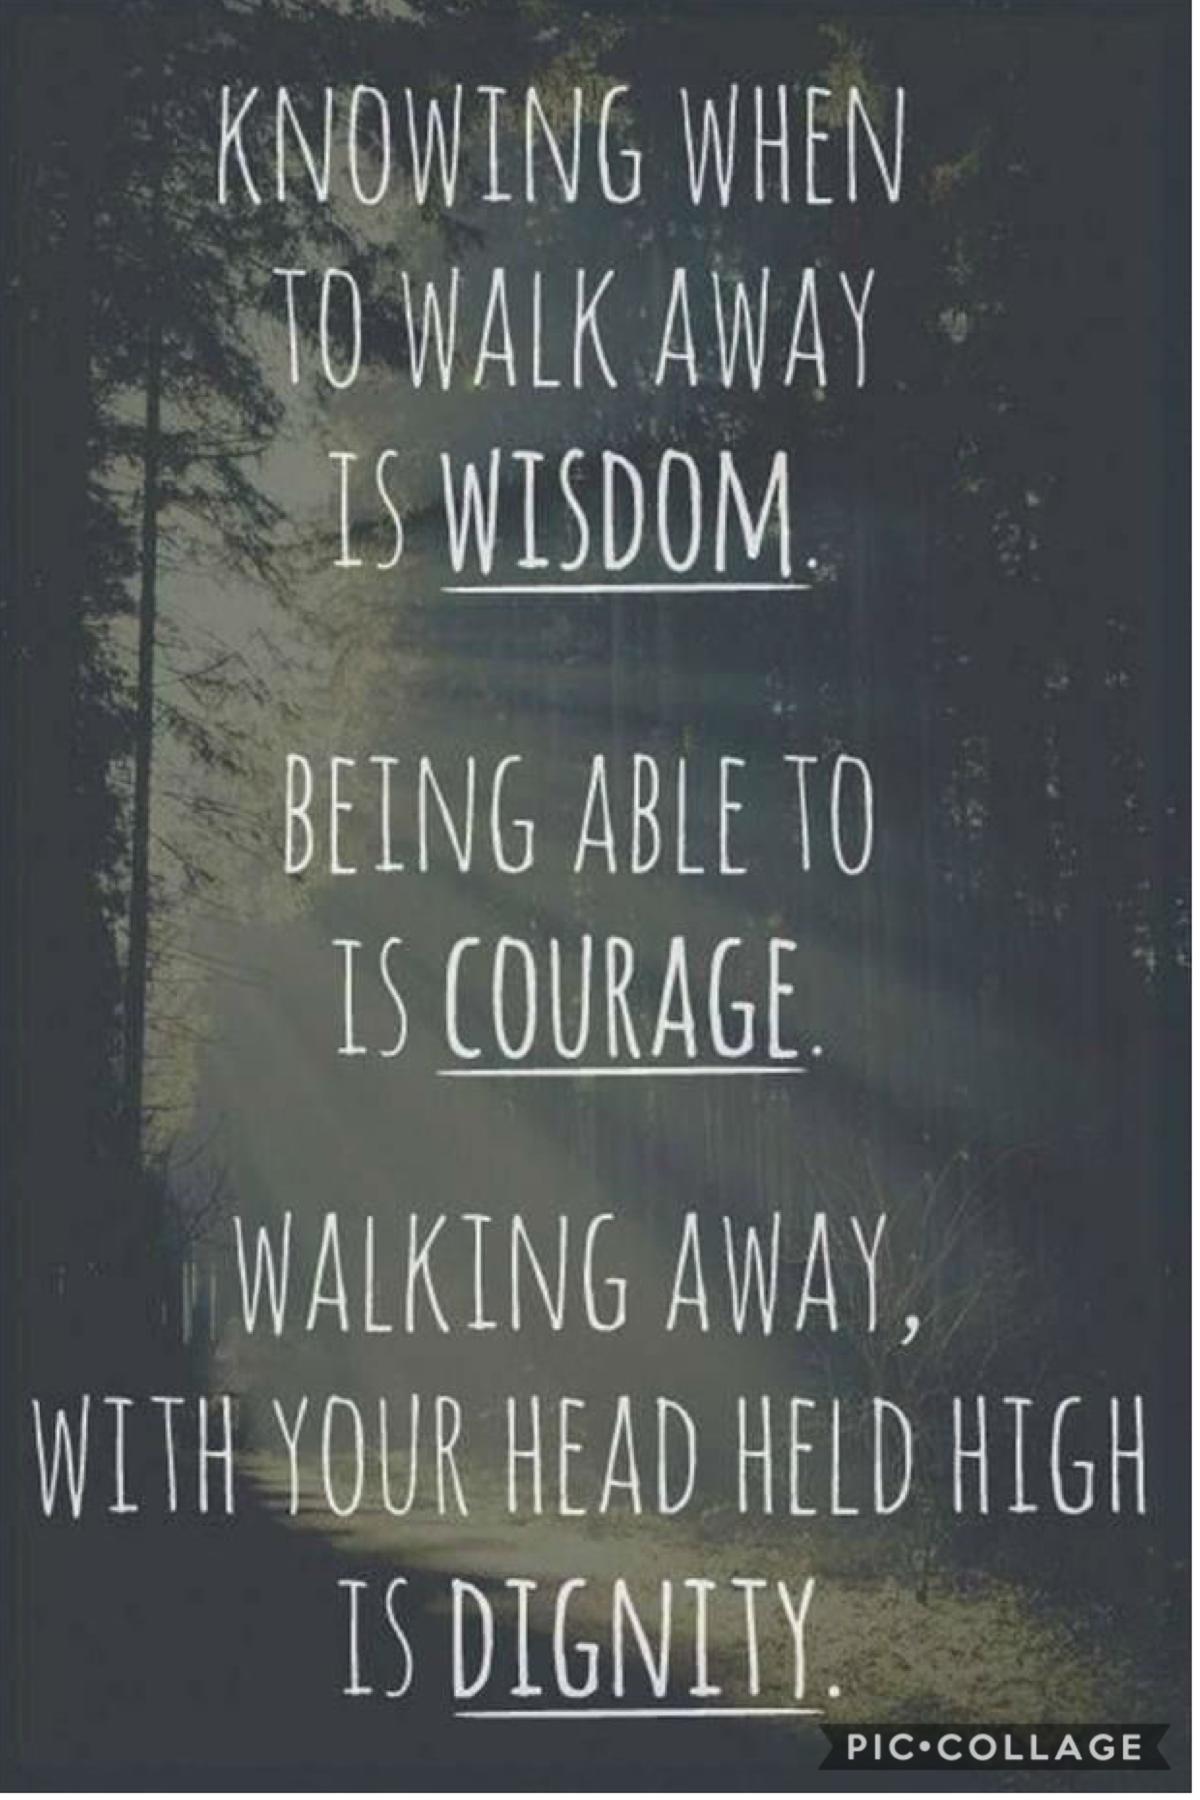 Wisdom. Courage. Dignity